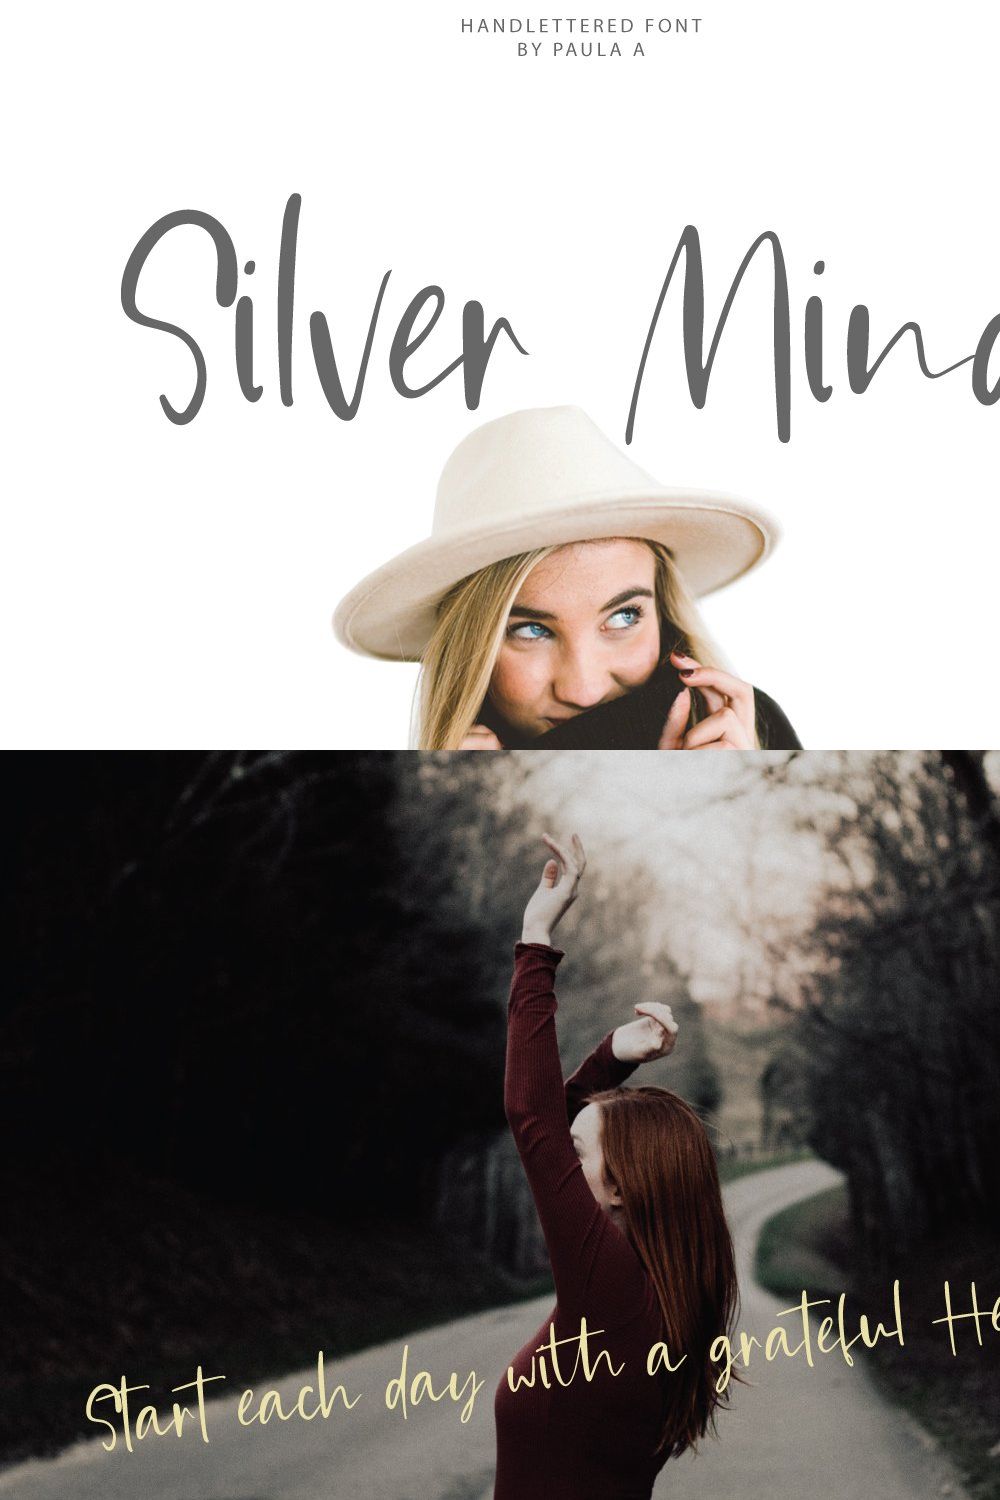 Silver Mind | Handlettered Font pinterest preview image.